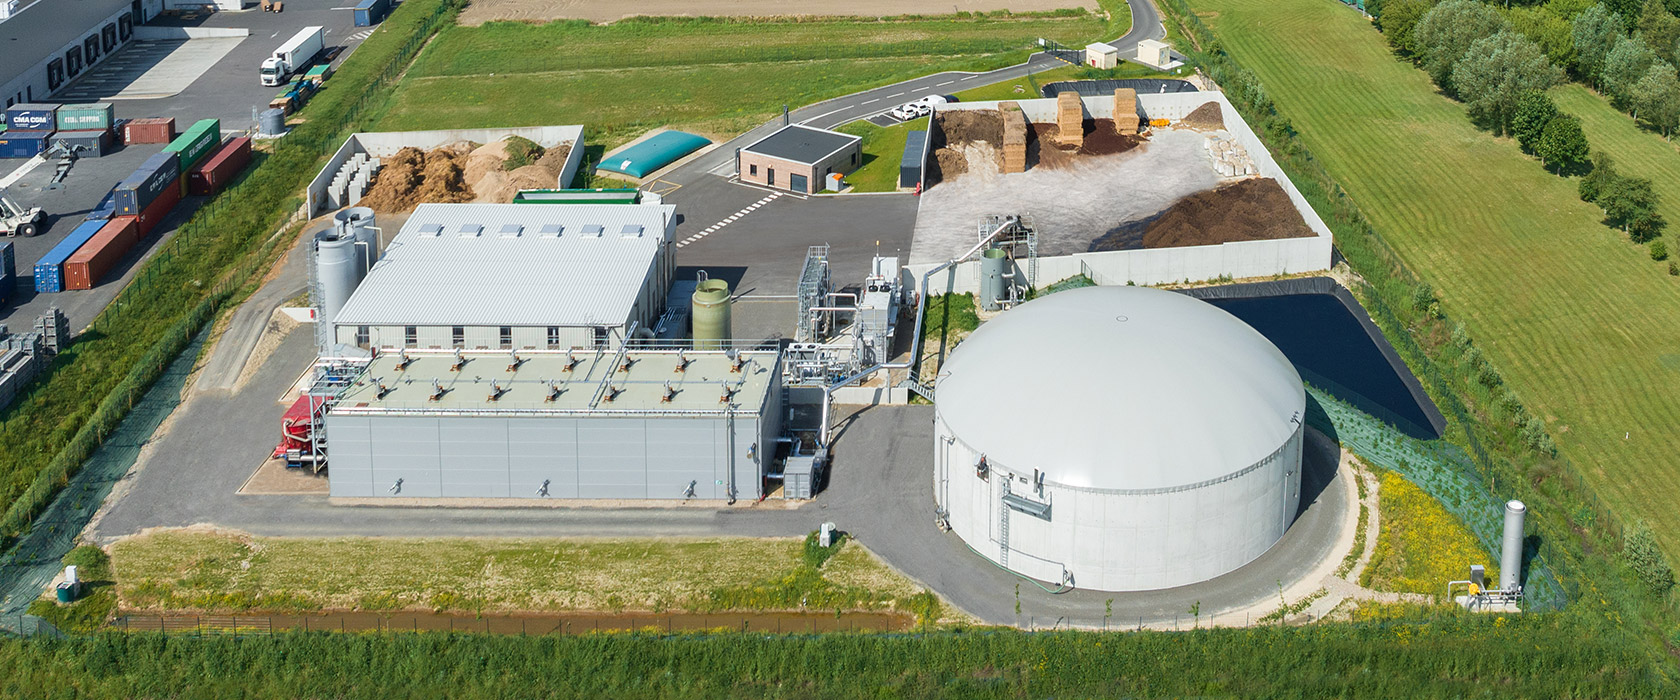 engie bioz centrale biomethane caux vallee seine